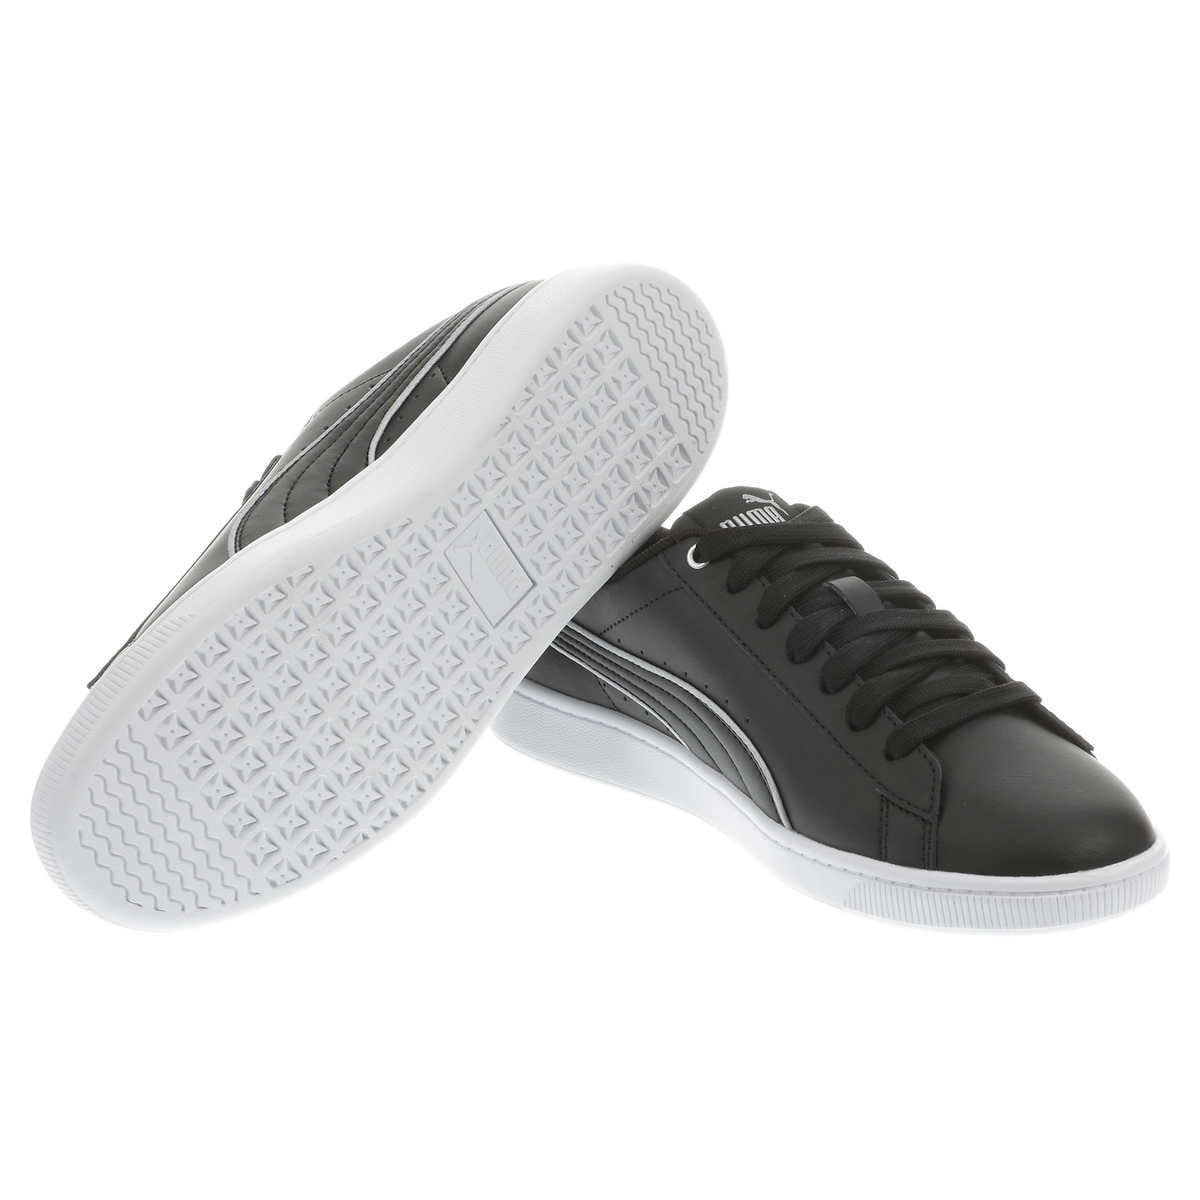 puma ladies tennis shoes